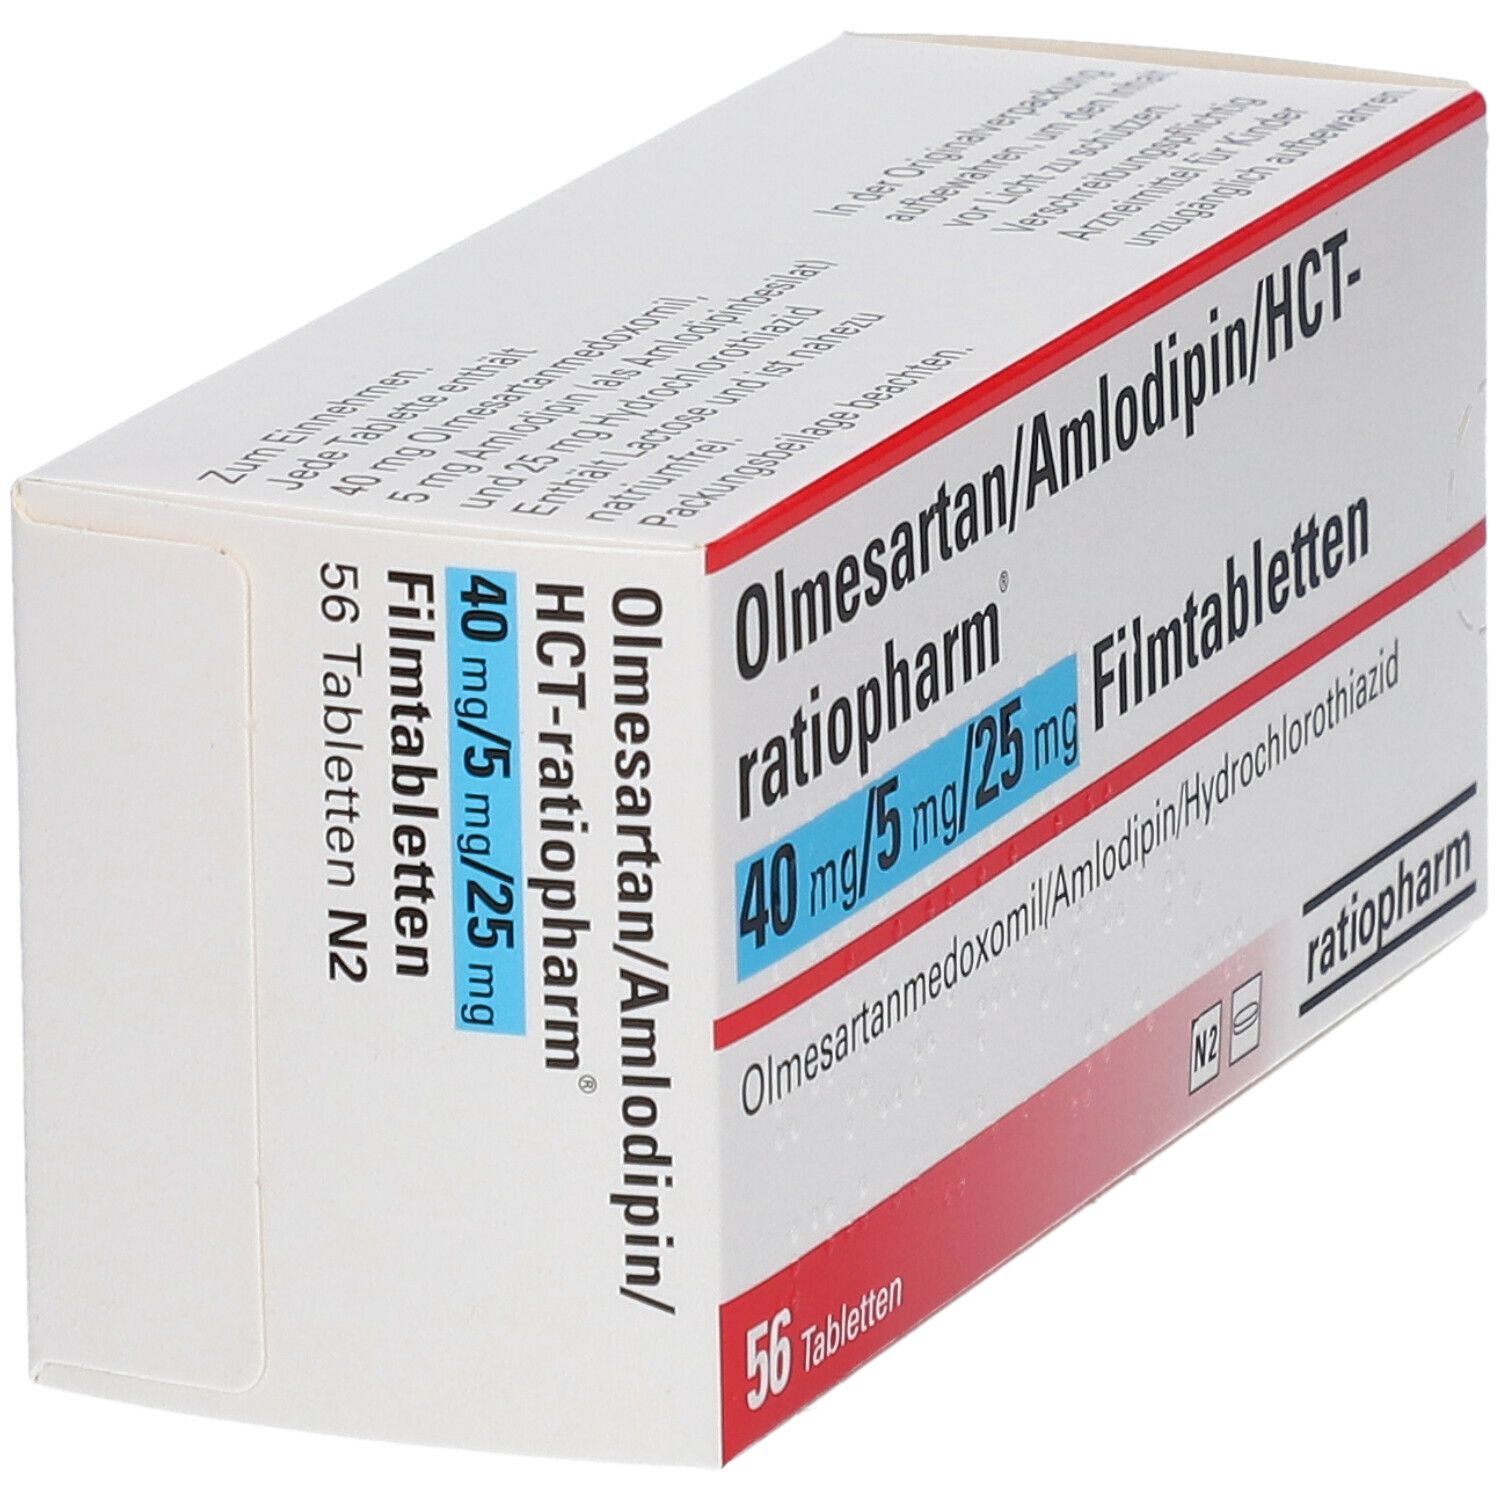 Olmesartan/Amlodipin/HCT-Ratio 40/5/25 mg